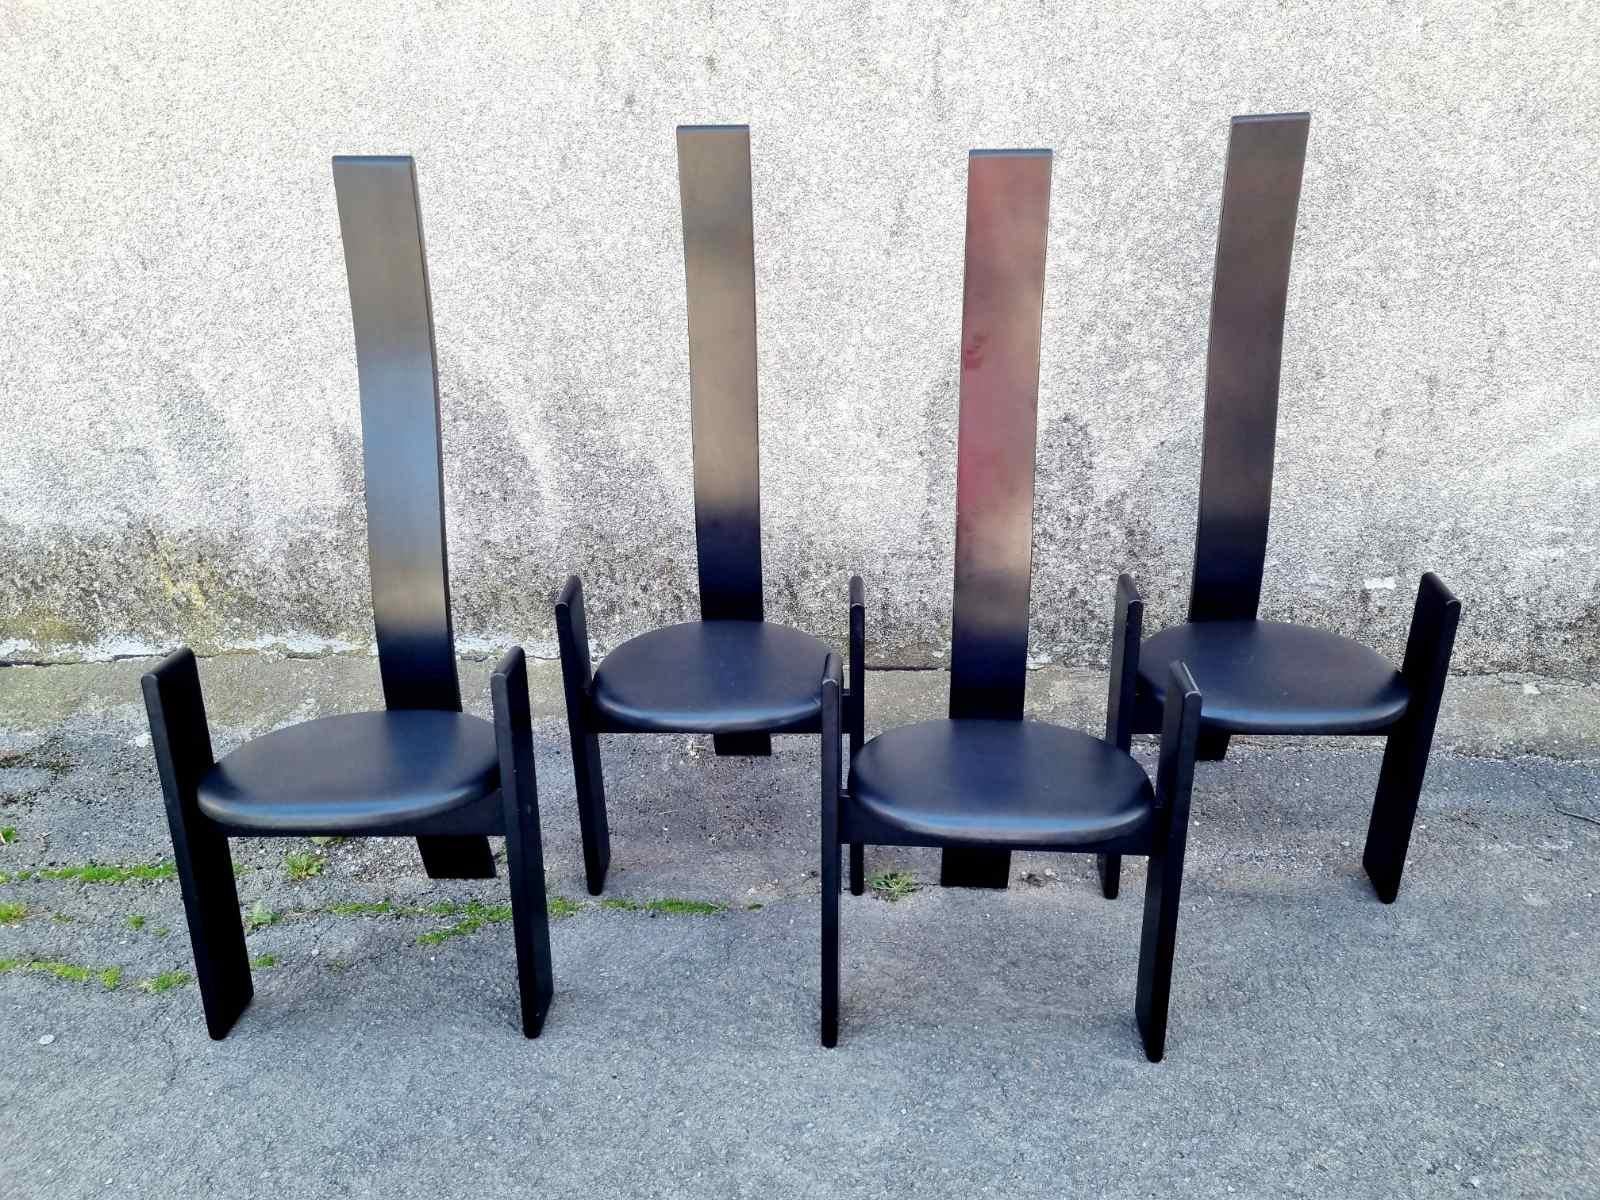 Chaises de salle à manger en bois laqué noir Golem de Vico Magistretti, Italie 1969.
Bel ensemble de 4 chaises de salle à manger 